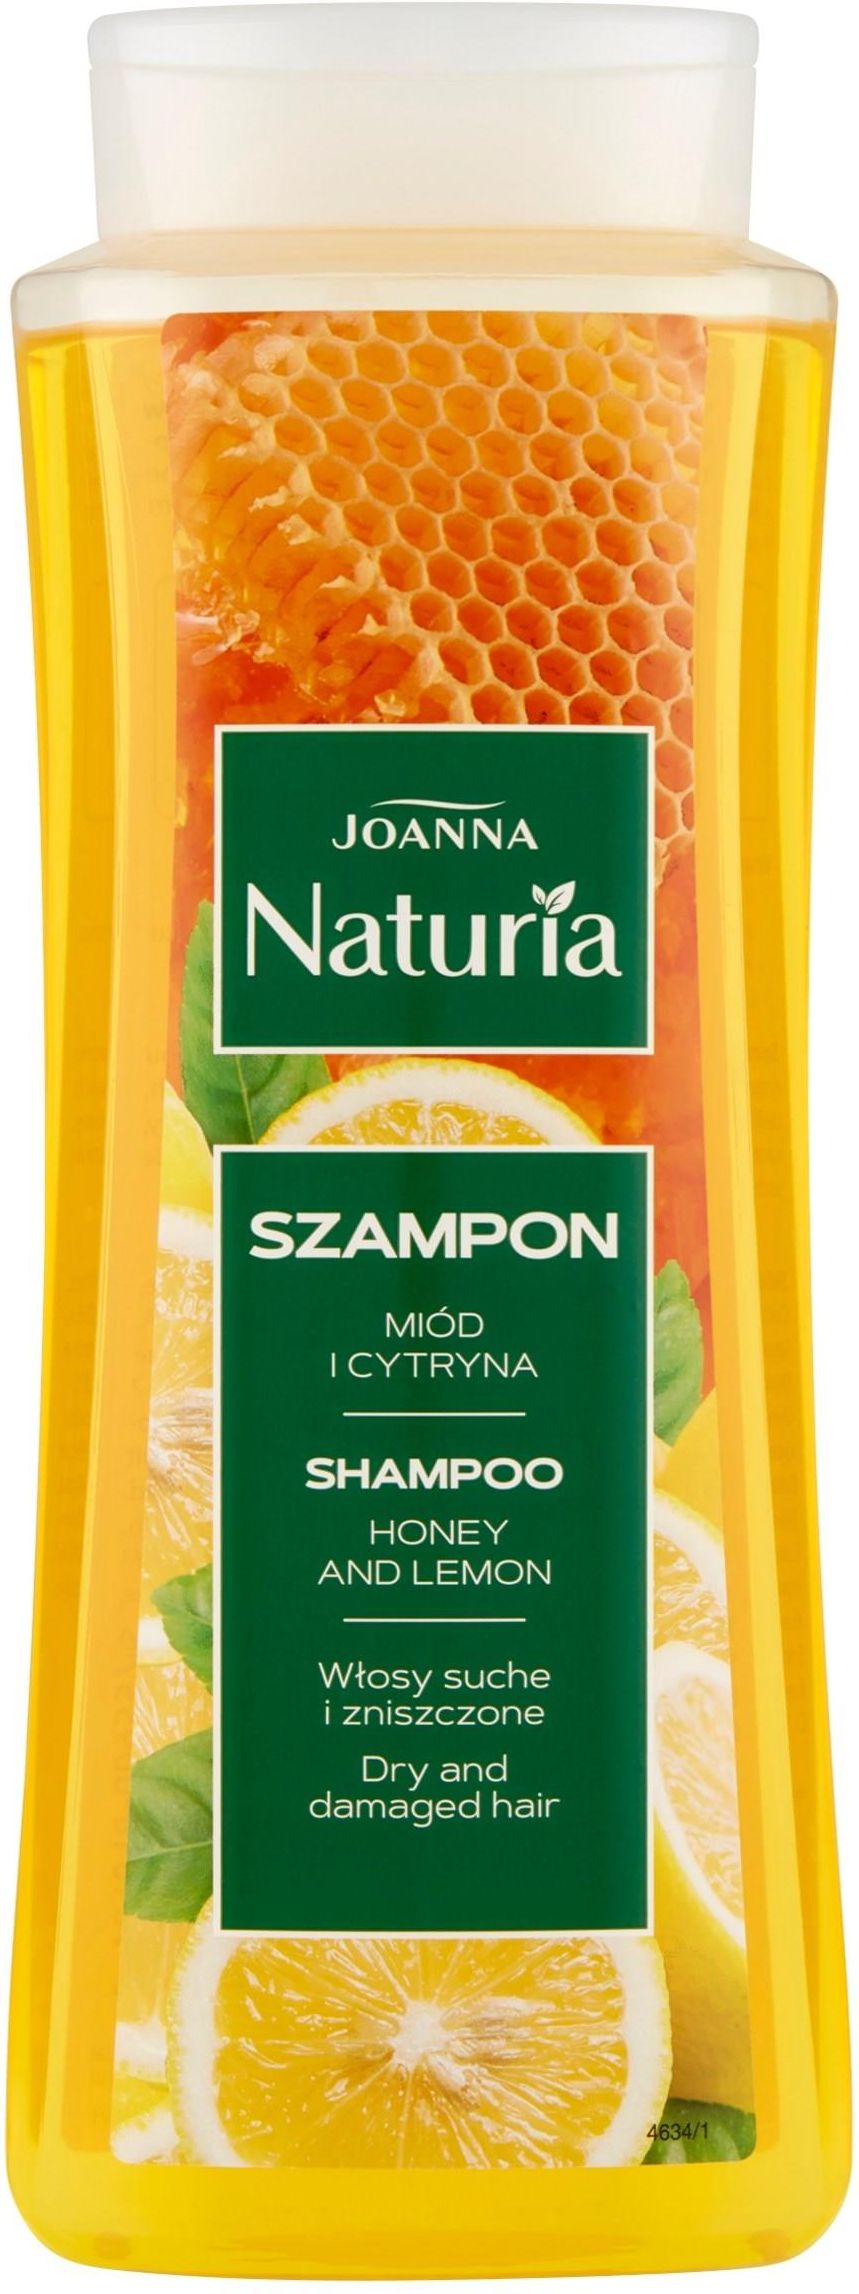 szampon z cytryną